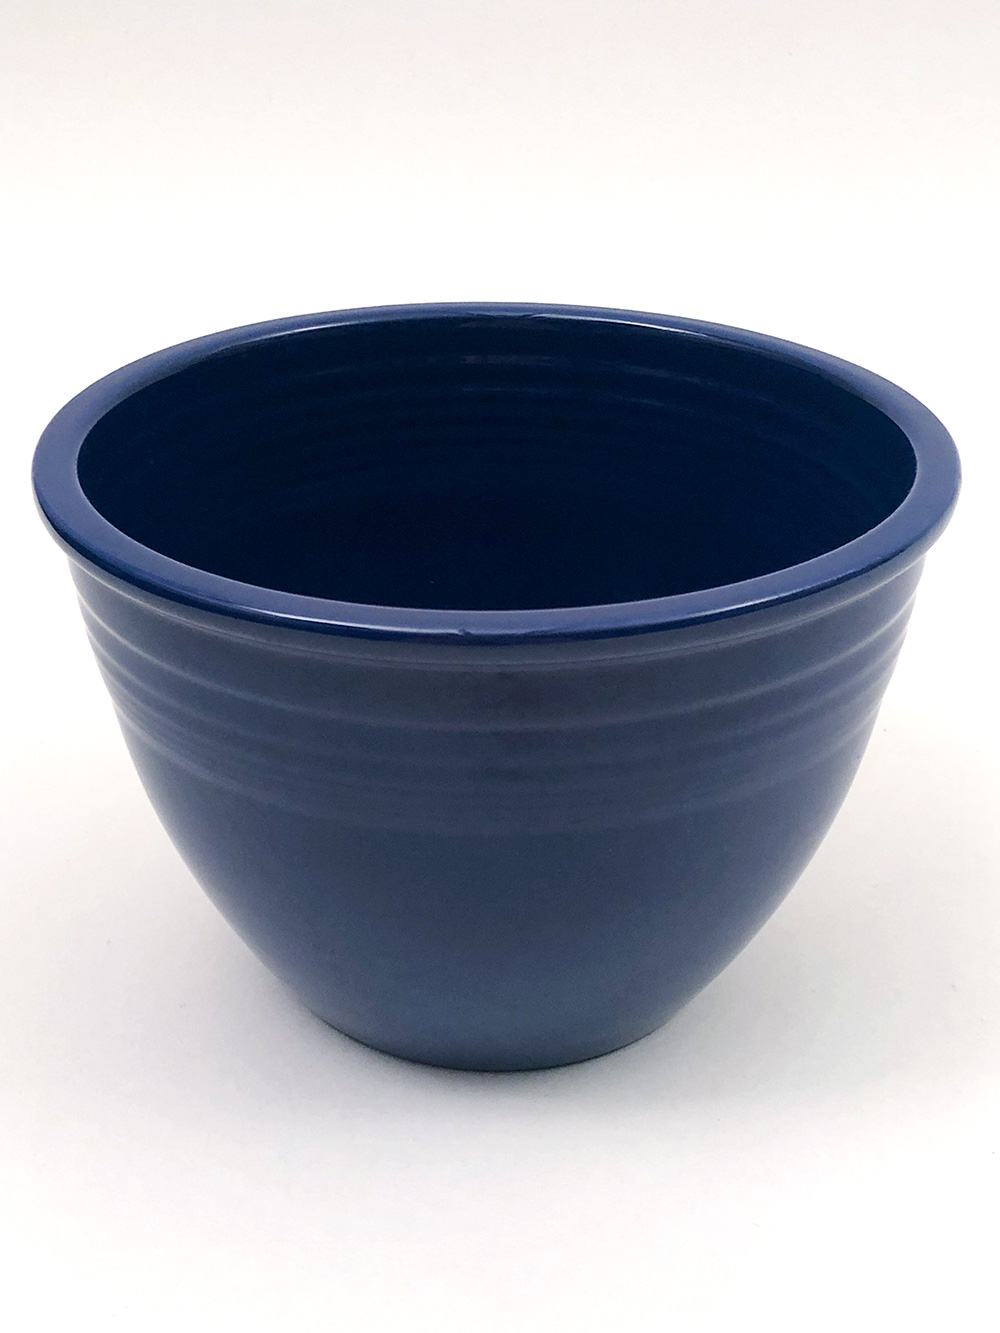 Number 3 cobalt blue vintage fiesta nesting bowl